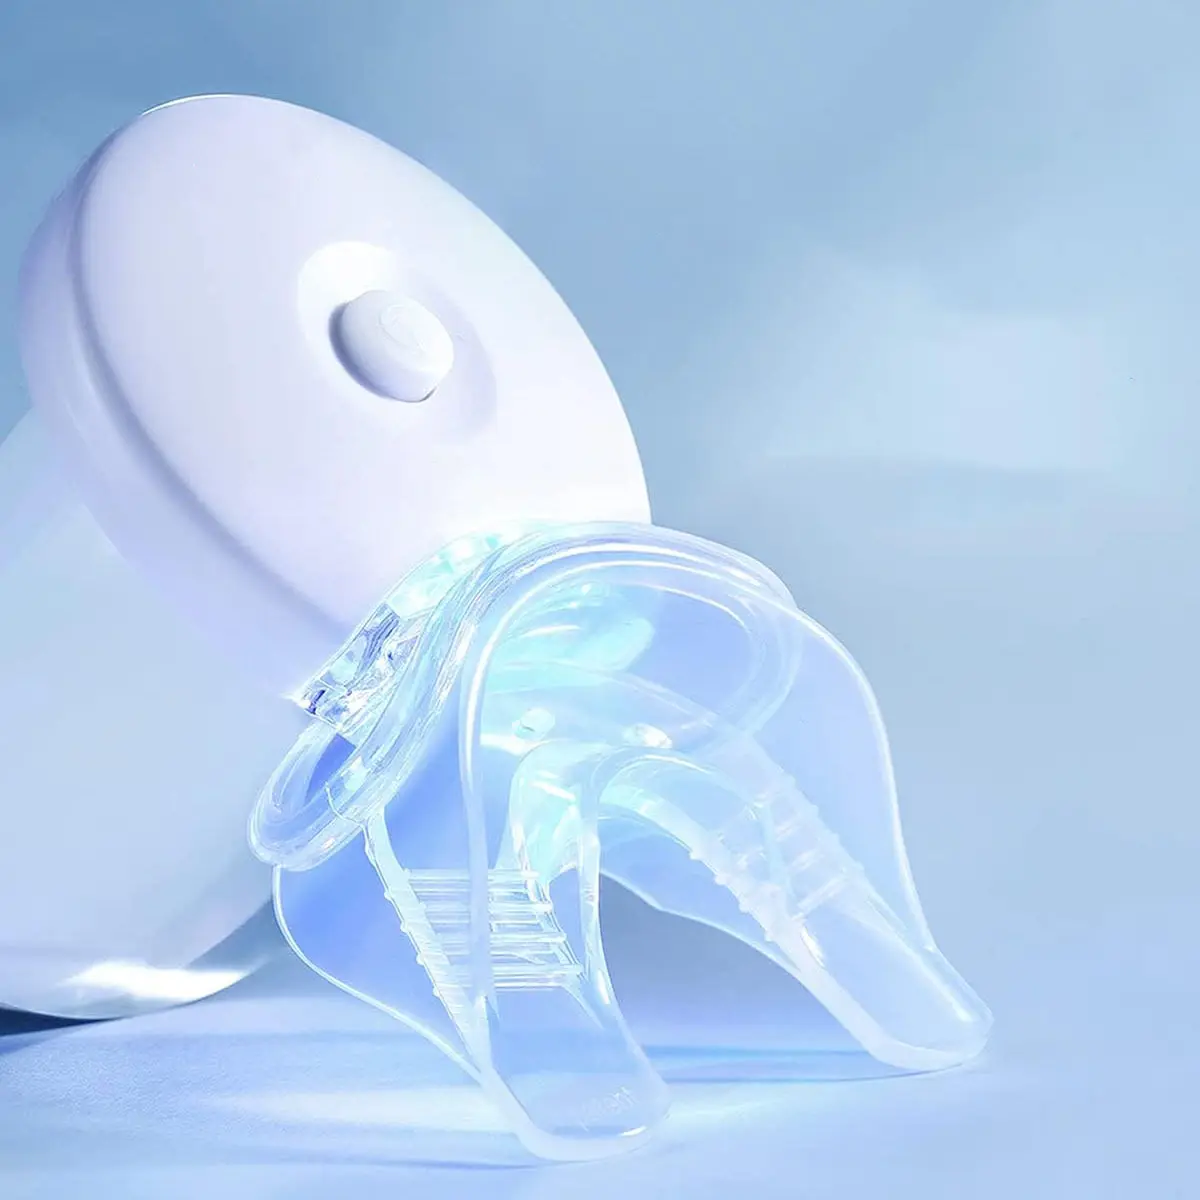 Bán buôn glorysmile chuyên nghiệp 3 Gel ống tiêm sử dụng nhà răng làm trắng LED Kit cho răng nhạy cảm